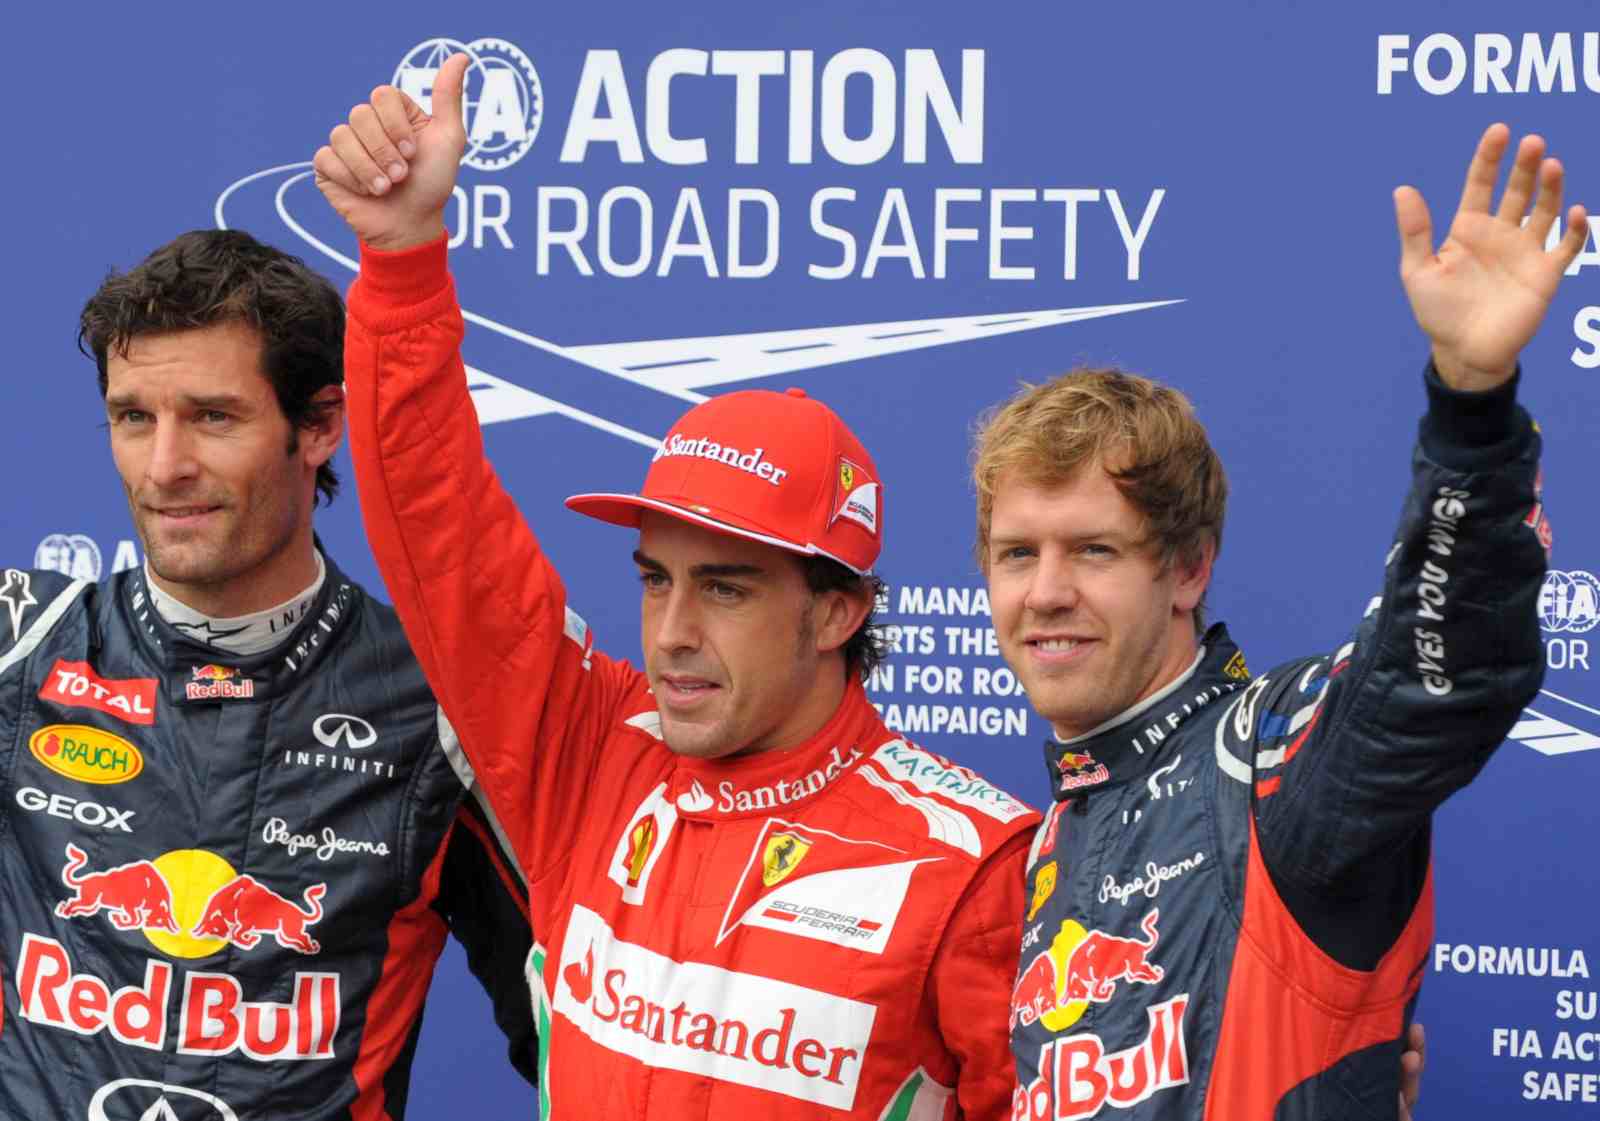 O grande domínio da Red Bull com Sebastian Vettel contribuiu para a dificuldade de Alonso